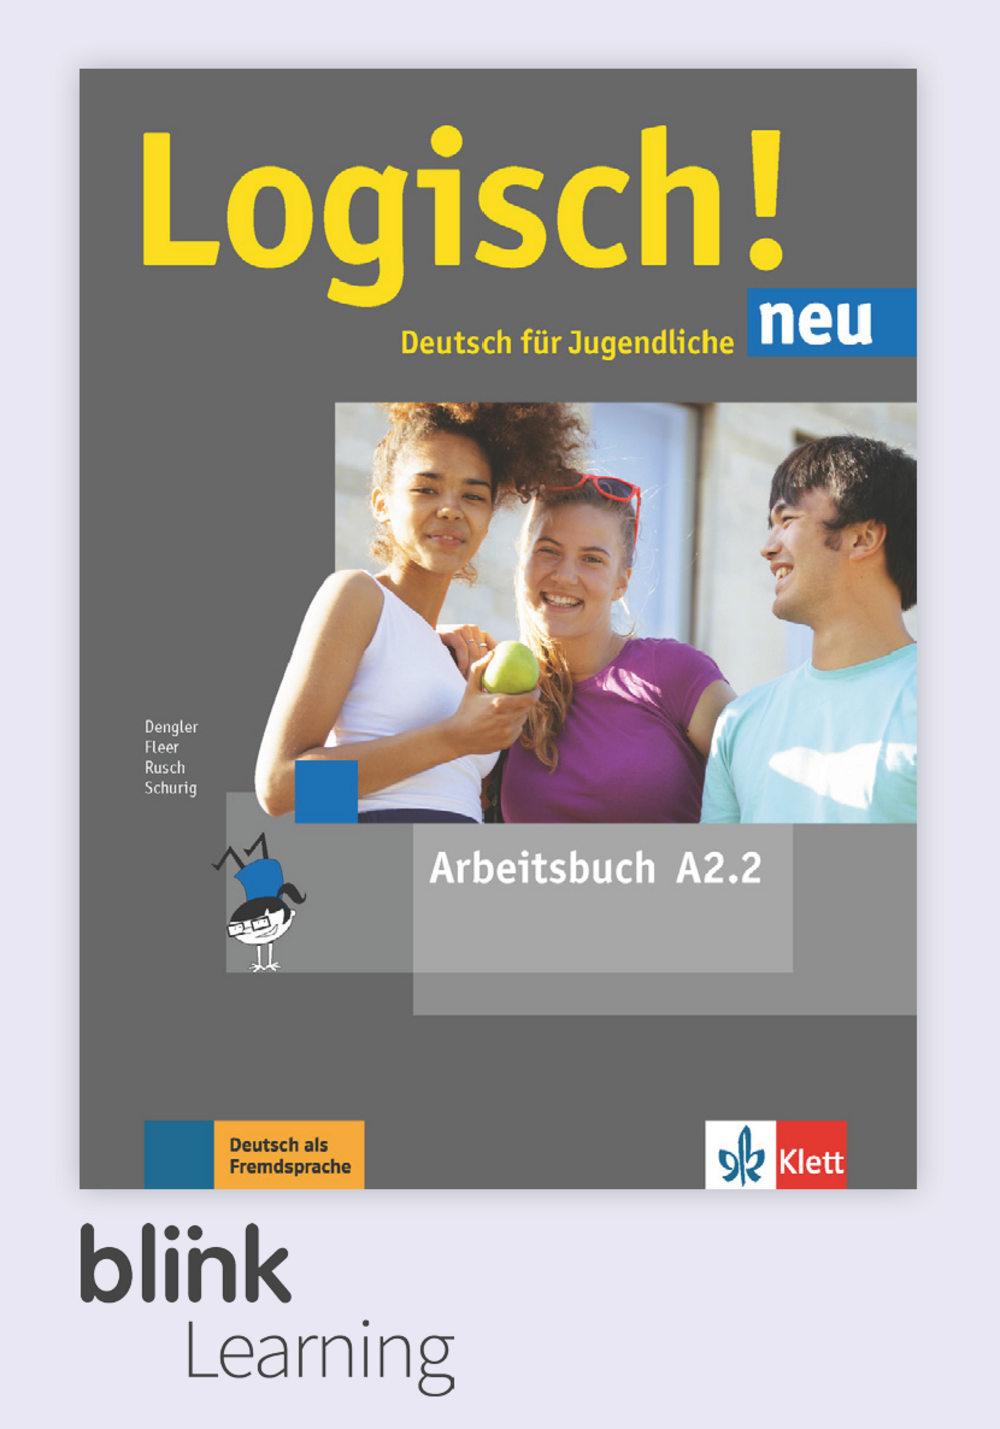 Logisch! neu A2.2 Digital Arbeitsbuch fur Unterrichtende / Цифровая рабочая тетрадь для учителя